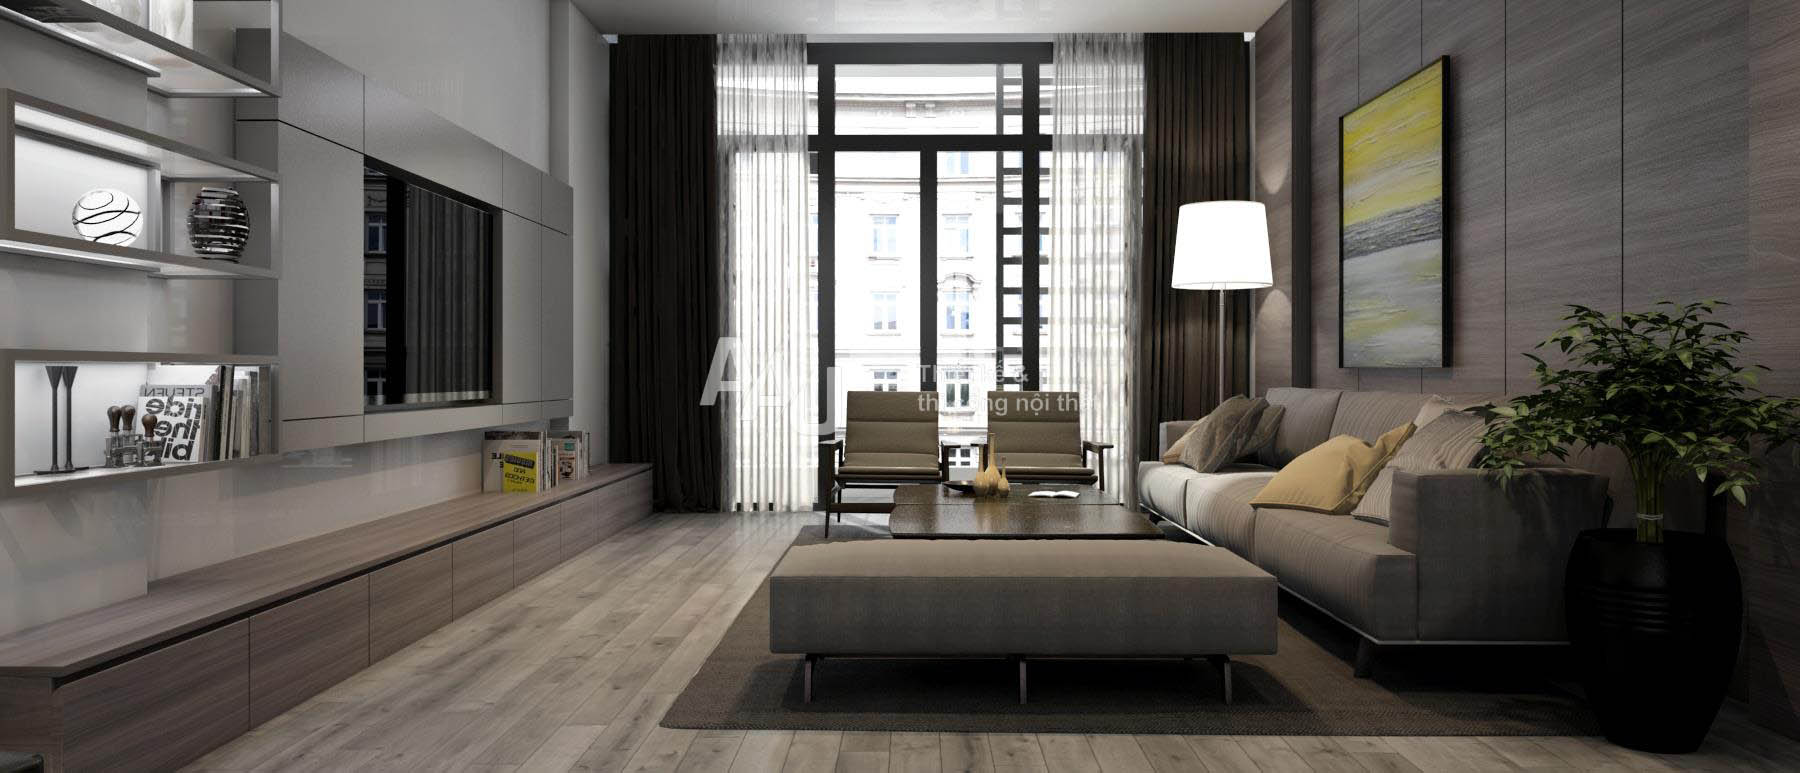 Thiết kế nội thất chung cư hiện đại với phòng khách sang trọng